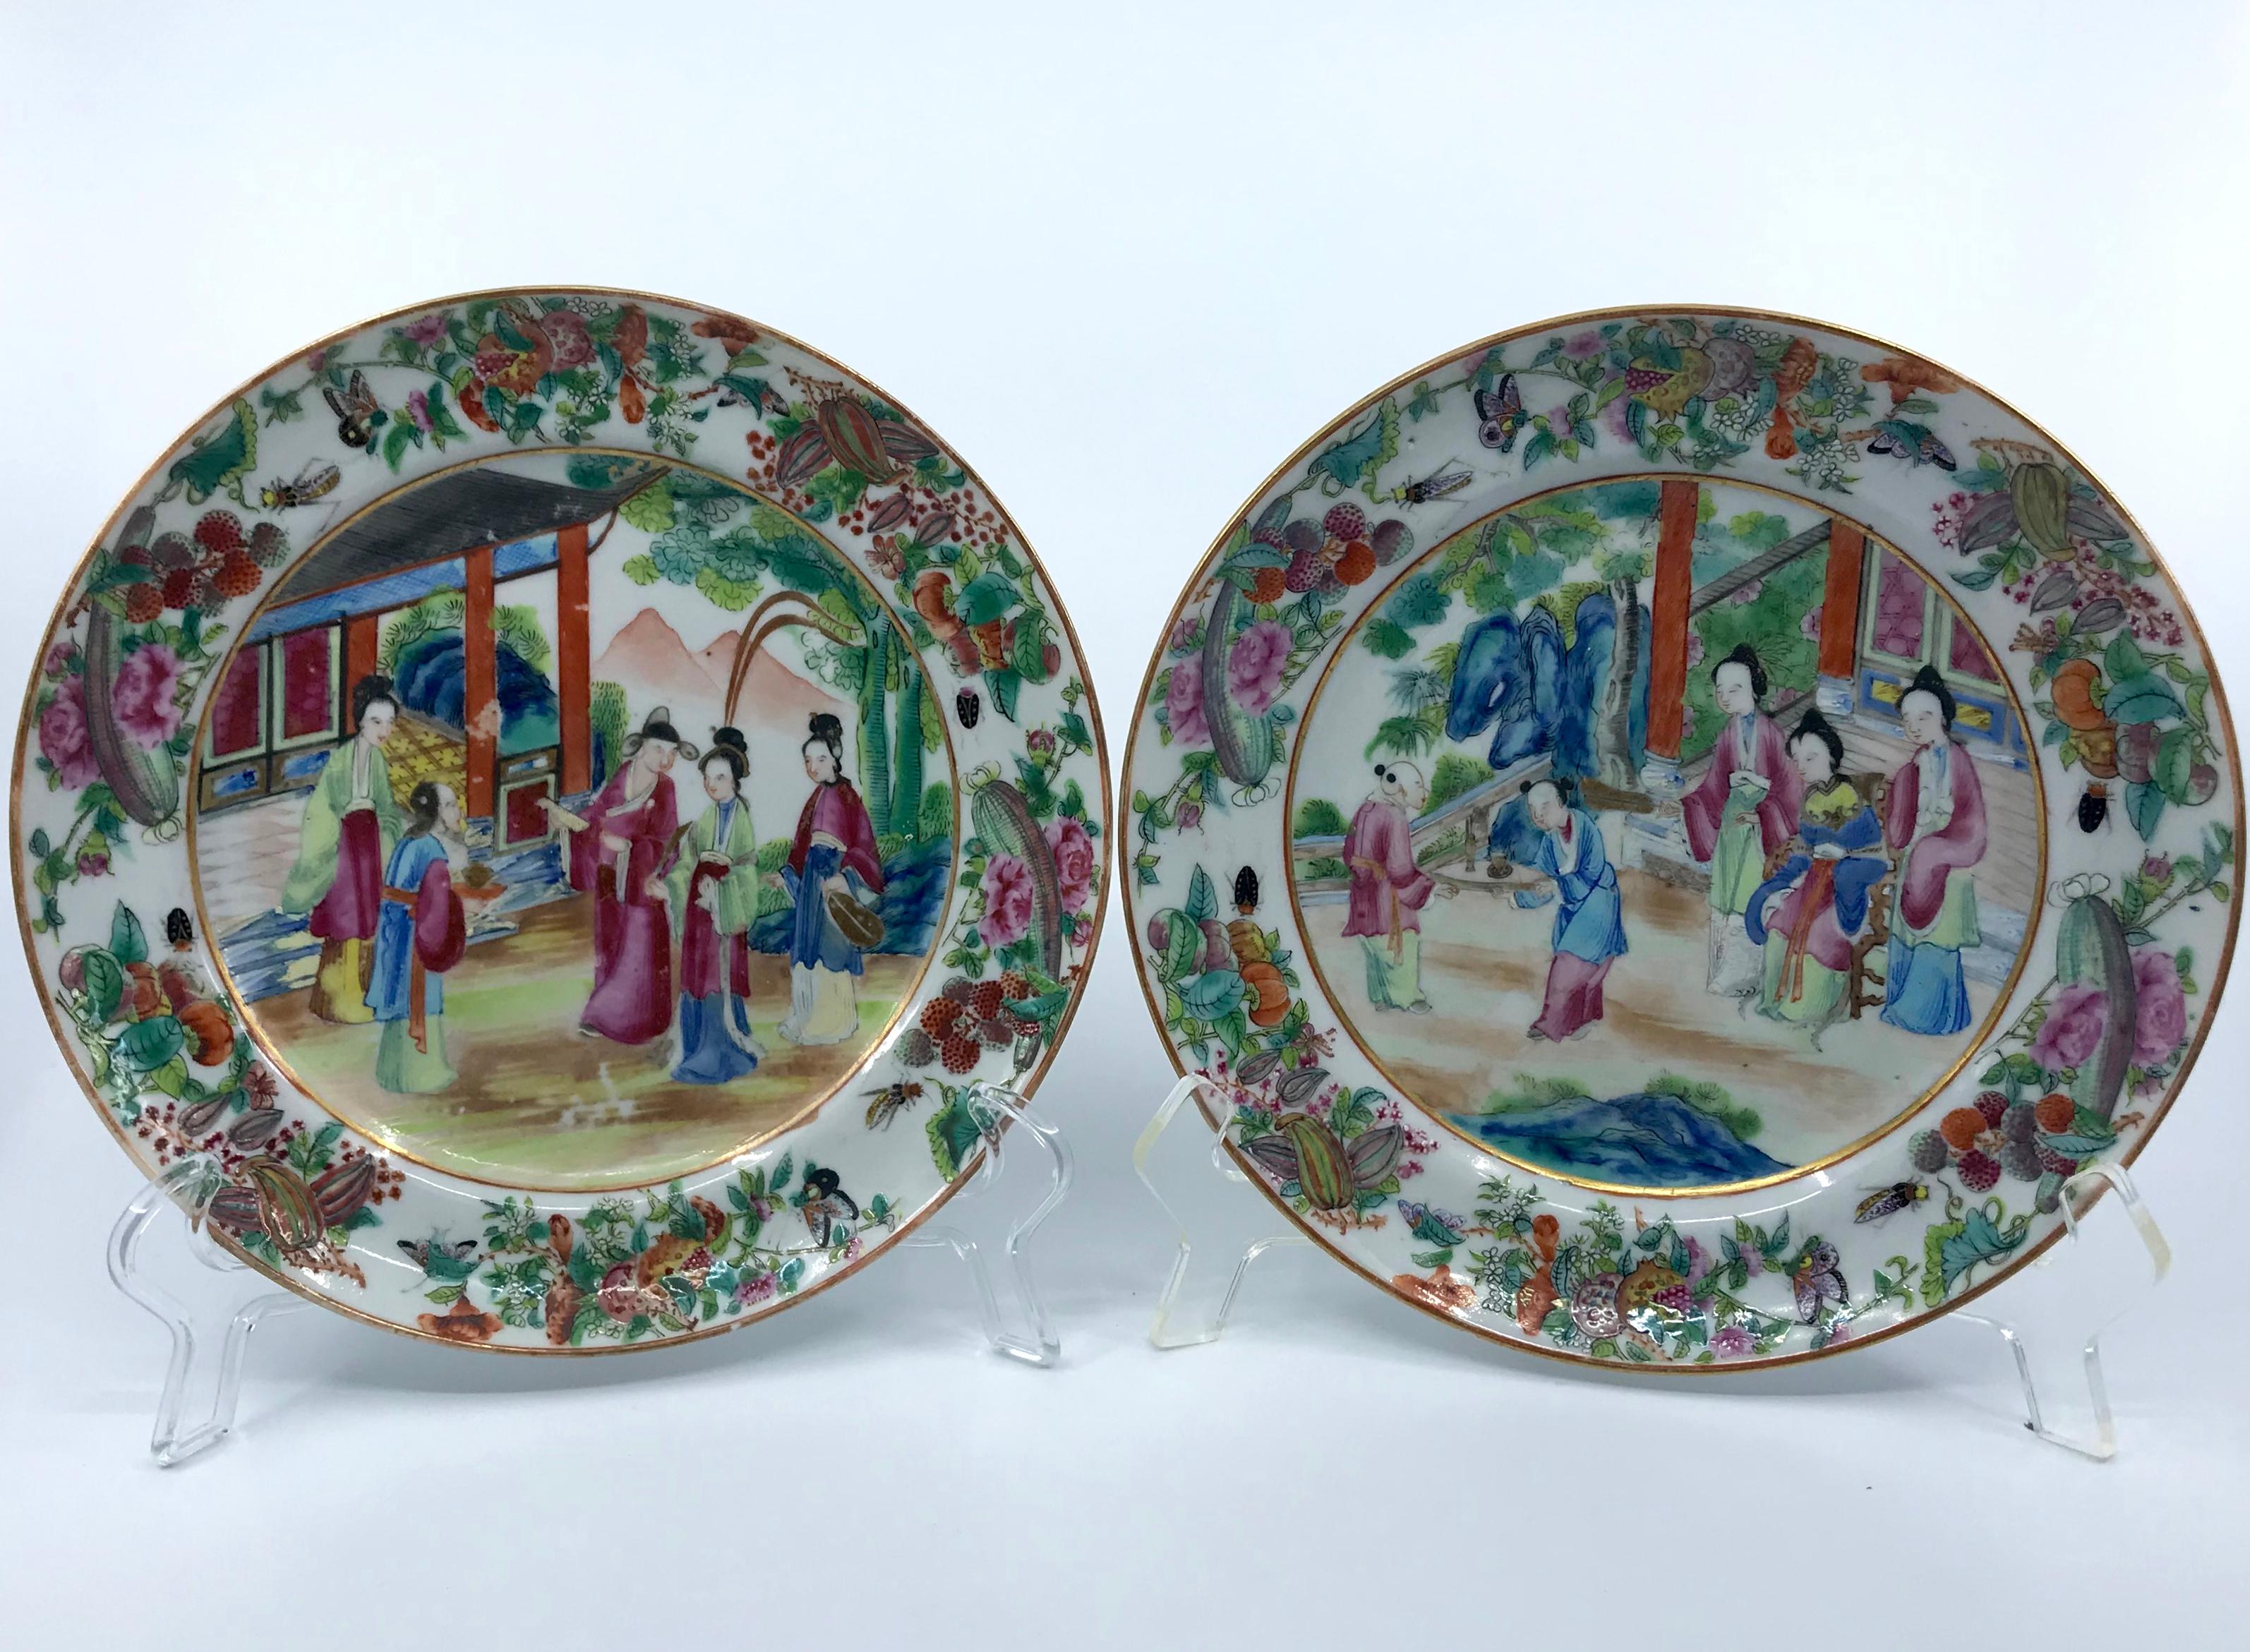 Paire d'assiettes en porcelaine chinoise rose Mandarin. Assiettes à déjeuner d'exportation chinoise peintes avec des couleurs vives et dorées, dans des tons roses, bleus et verts. Chine, vers 1820
Dimensions : 7,88